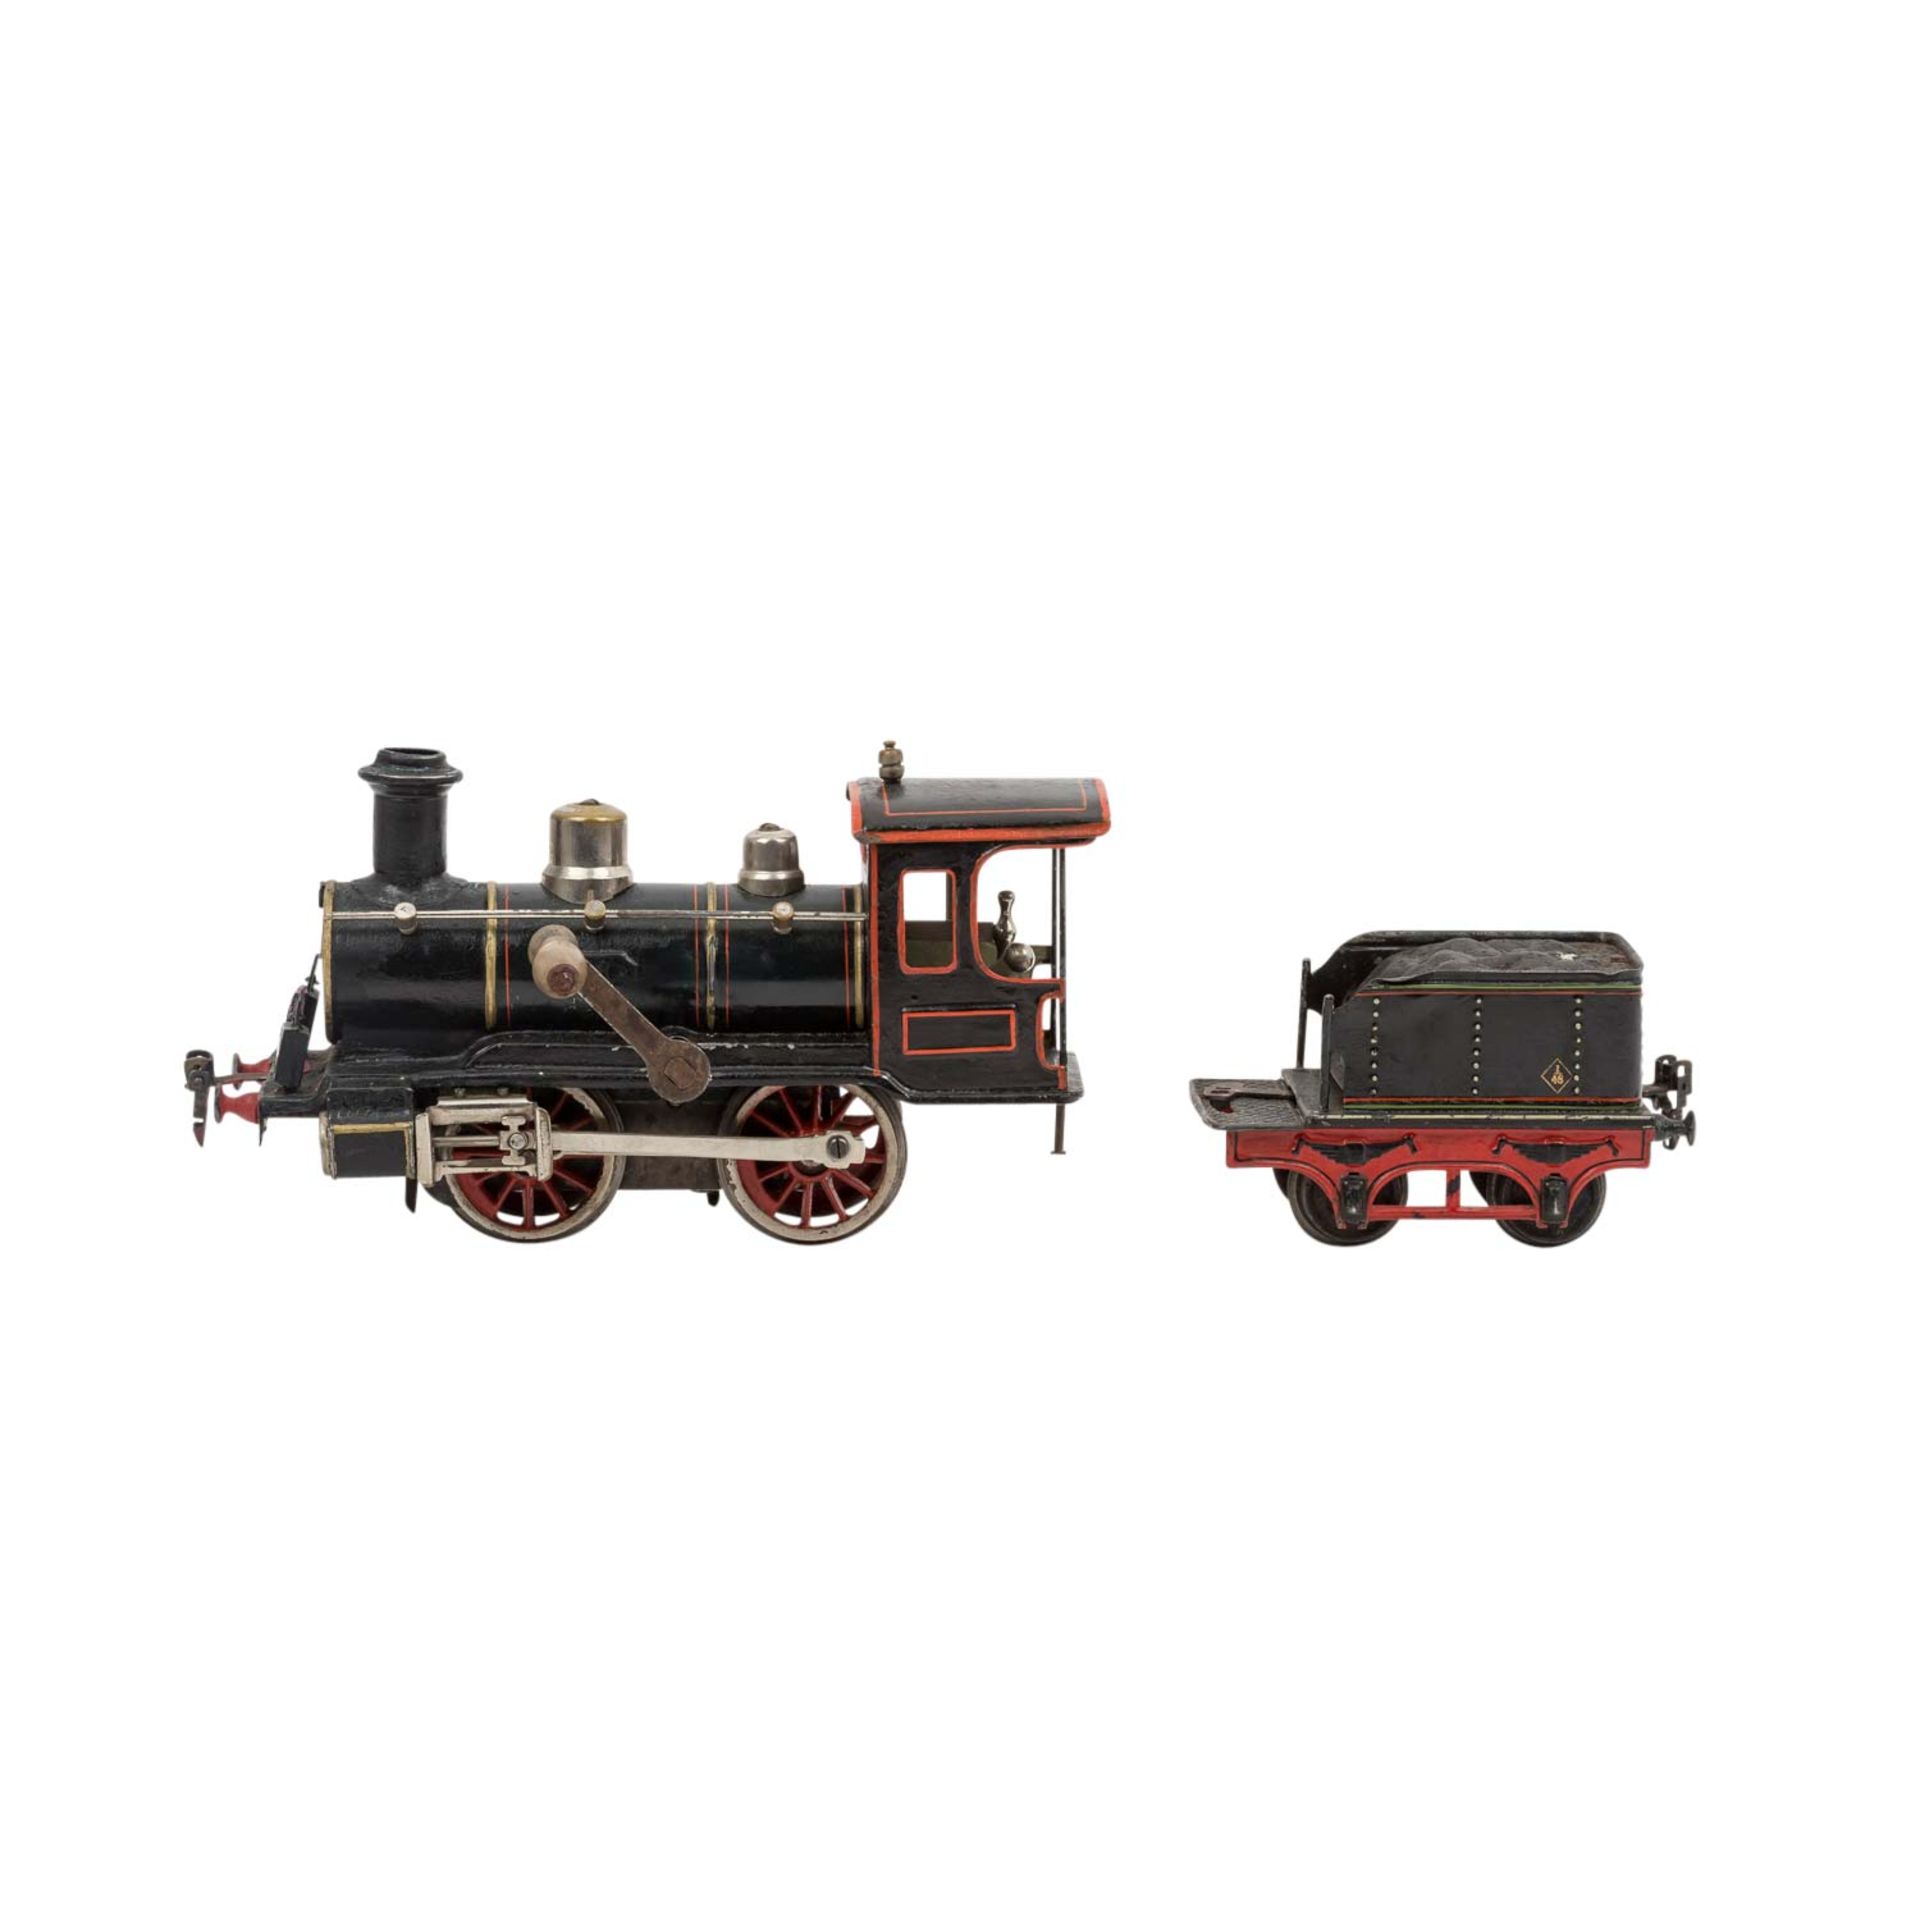 MÄRKLIN Uhrwerk-Dampflokomotive, 1904-05, Spur 1, - Bild 3 aus 9